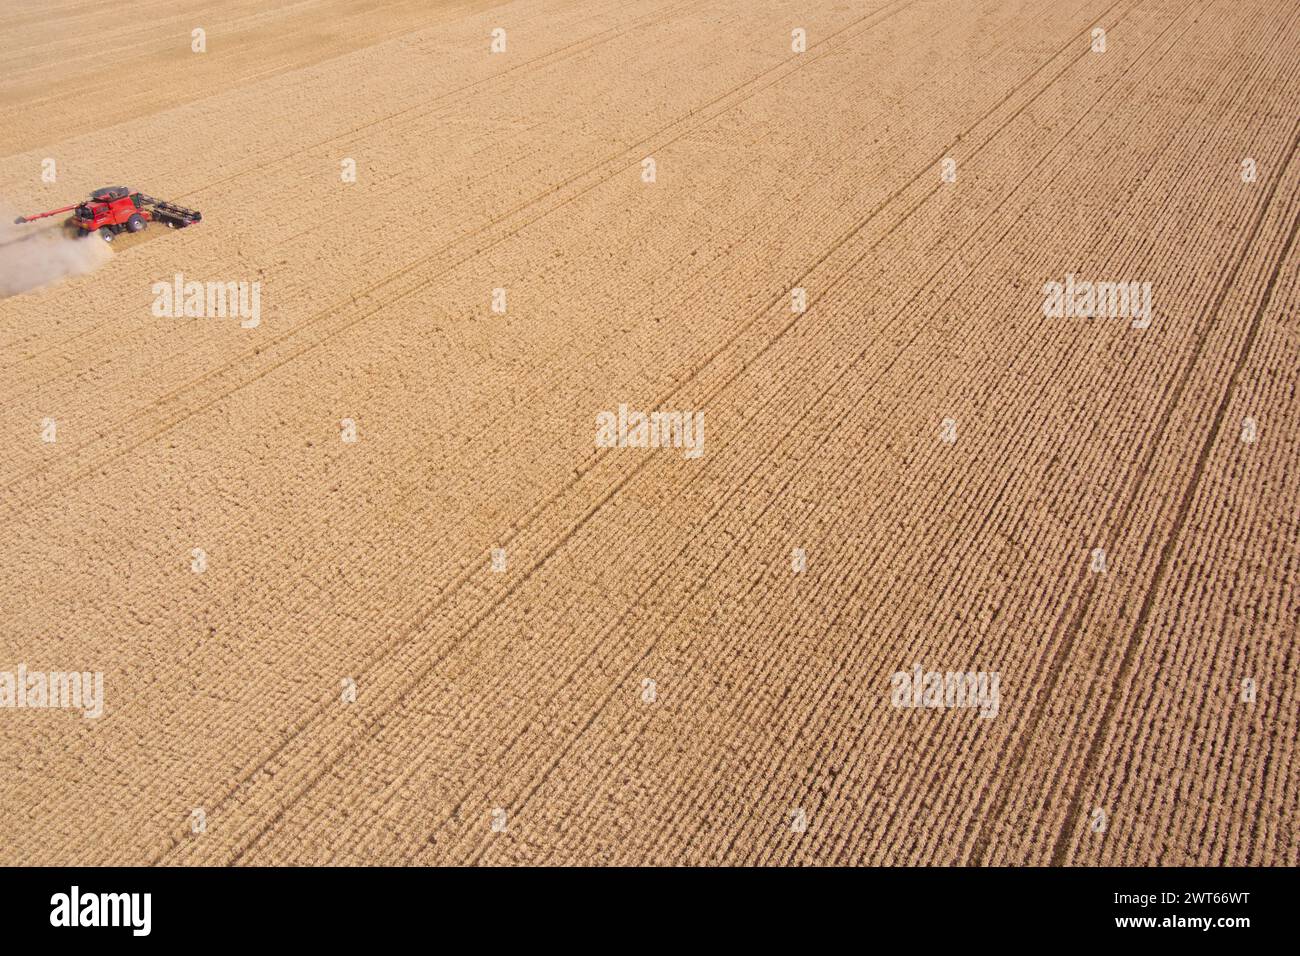 Antenne de moissonneuses-batteuses récoltant le blé près de Wallumbilla sur le Maranoa Queensland Australie Banque D'Images